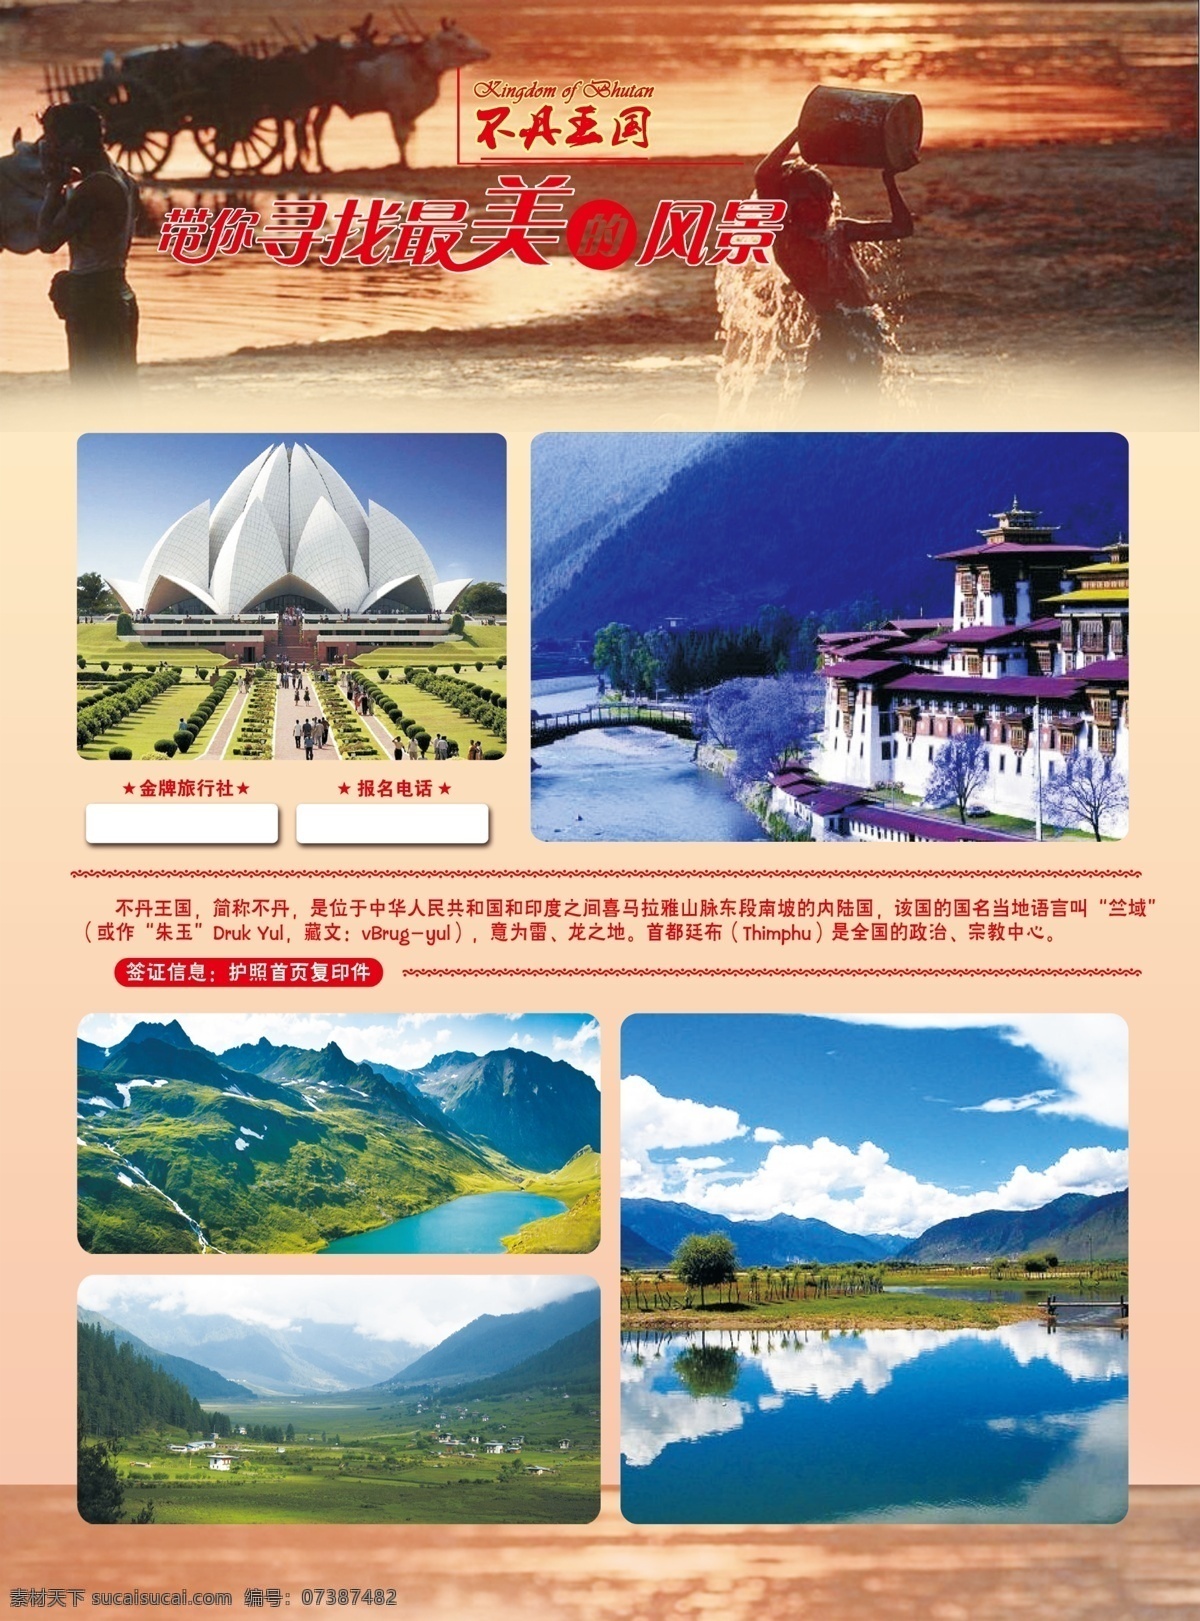 不丹 旅游 宣传单 模版下载 不丹王国 最美 风景 红色 寻找 山水 psd源文件 300分辨率 蓝色